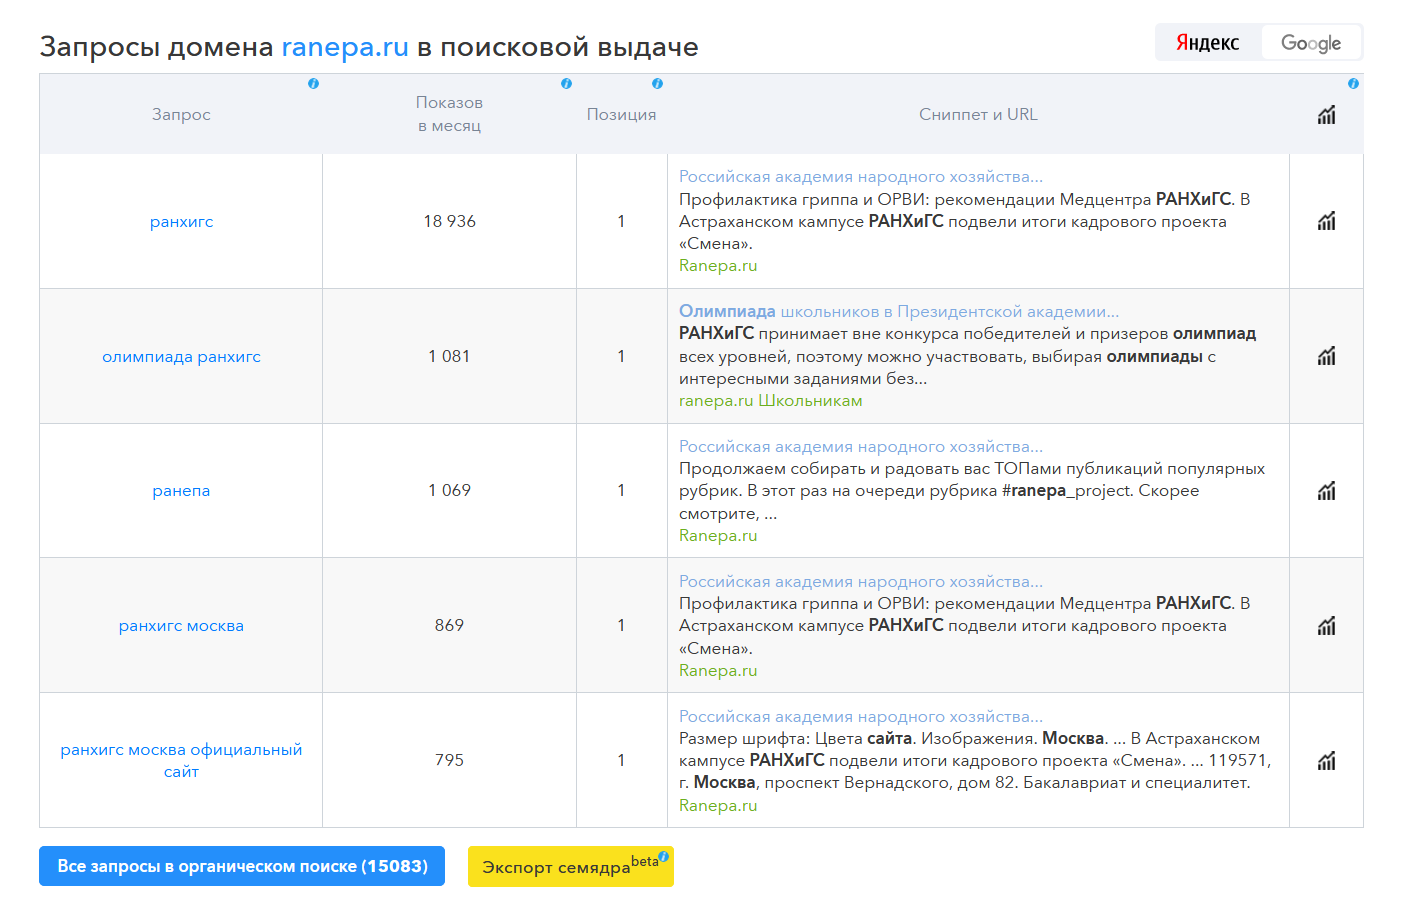 SpyWords - показывает запросы домена ranepa.ru в поисковой выдаче